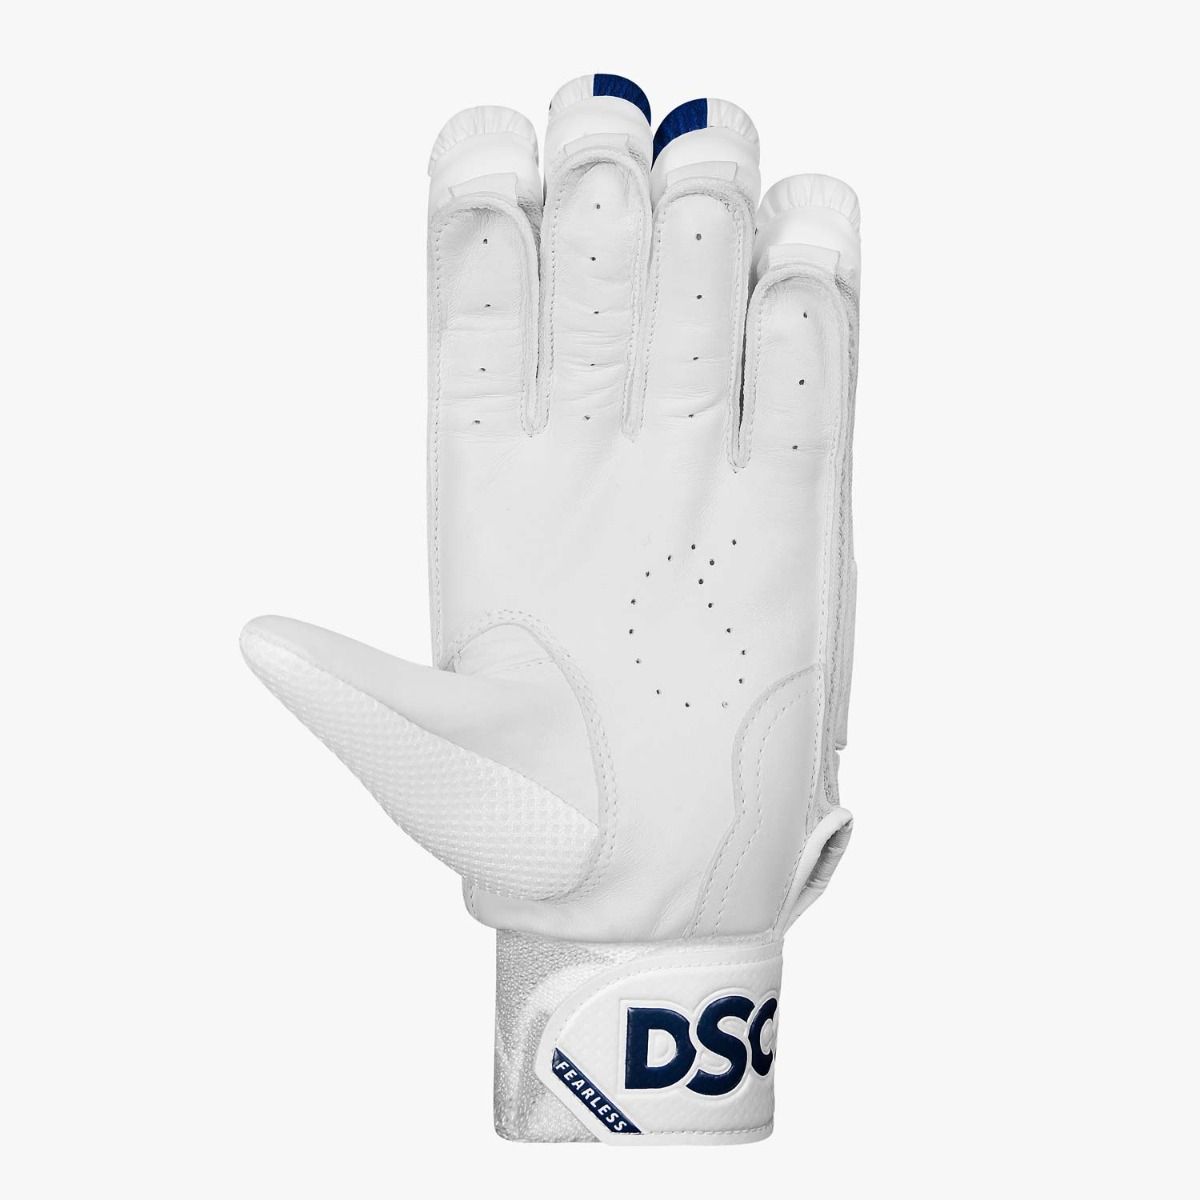 DSC Batting Gloves Pearla 4000 - White/Blue